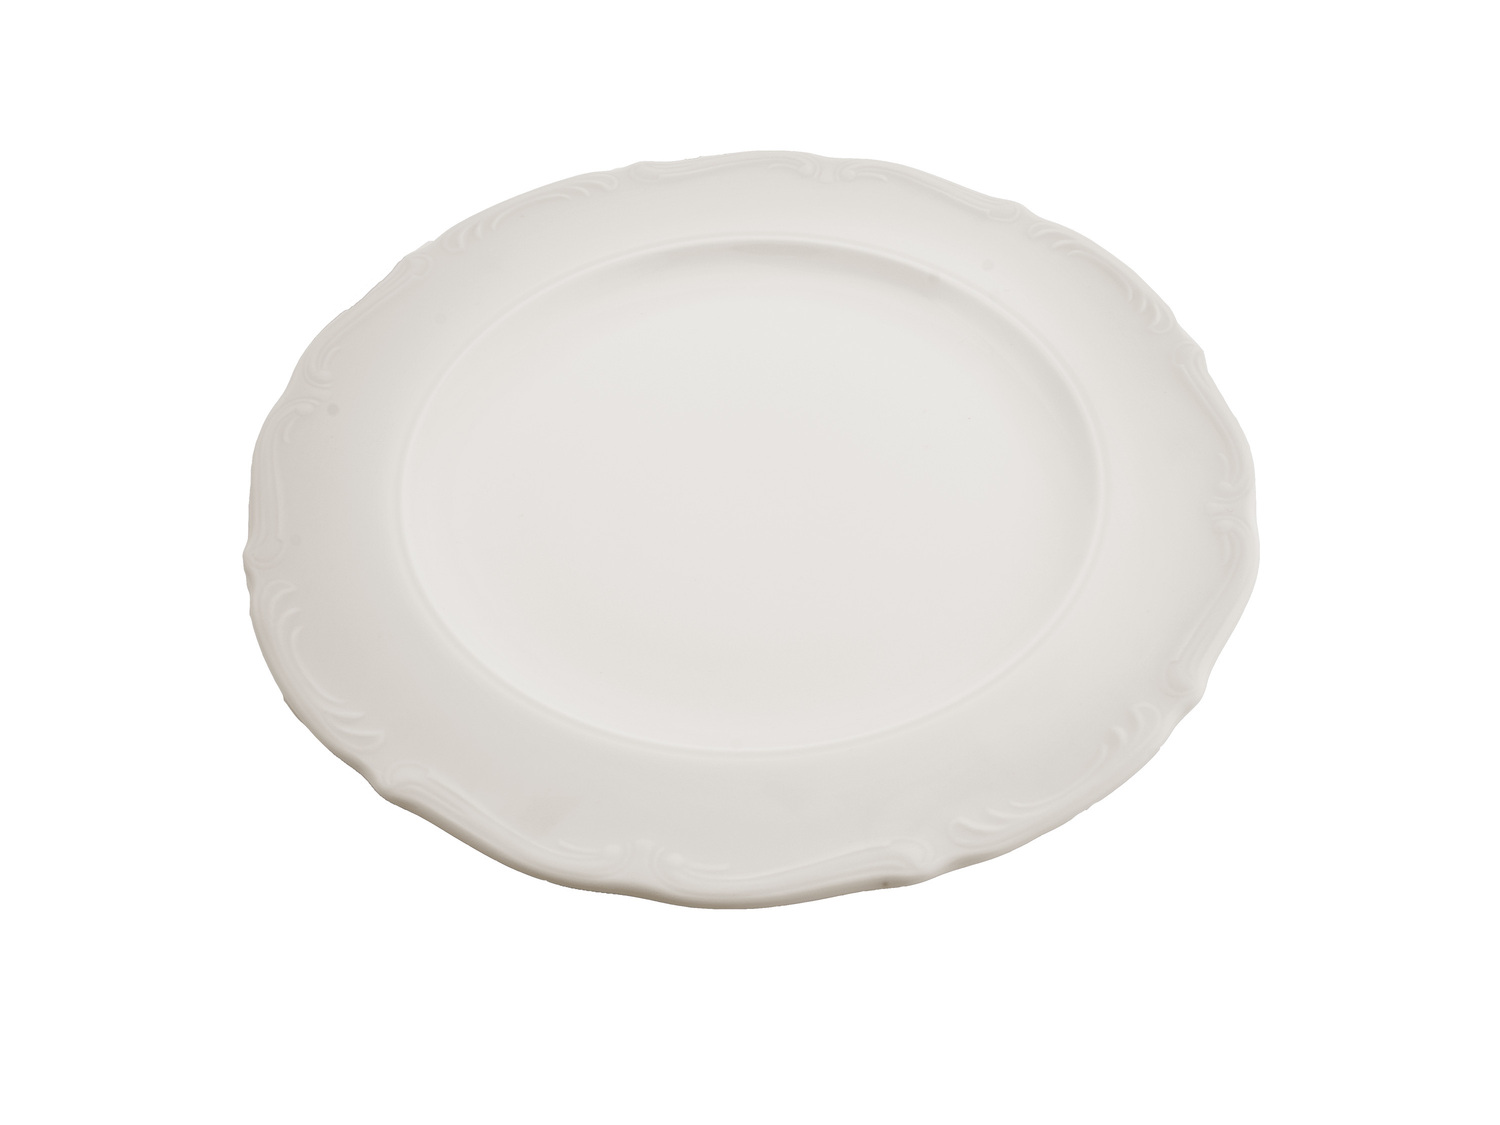 Zestaw obiadowy Maria Teresa, biały Chodzież porcelana, cena 129,00 PLN 
w zestawie:
- ...